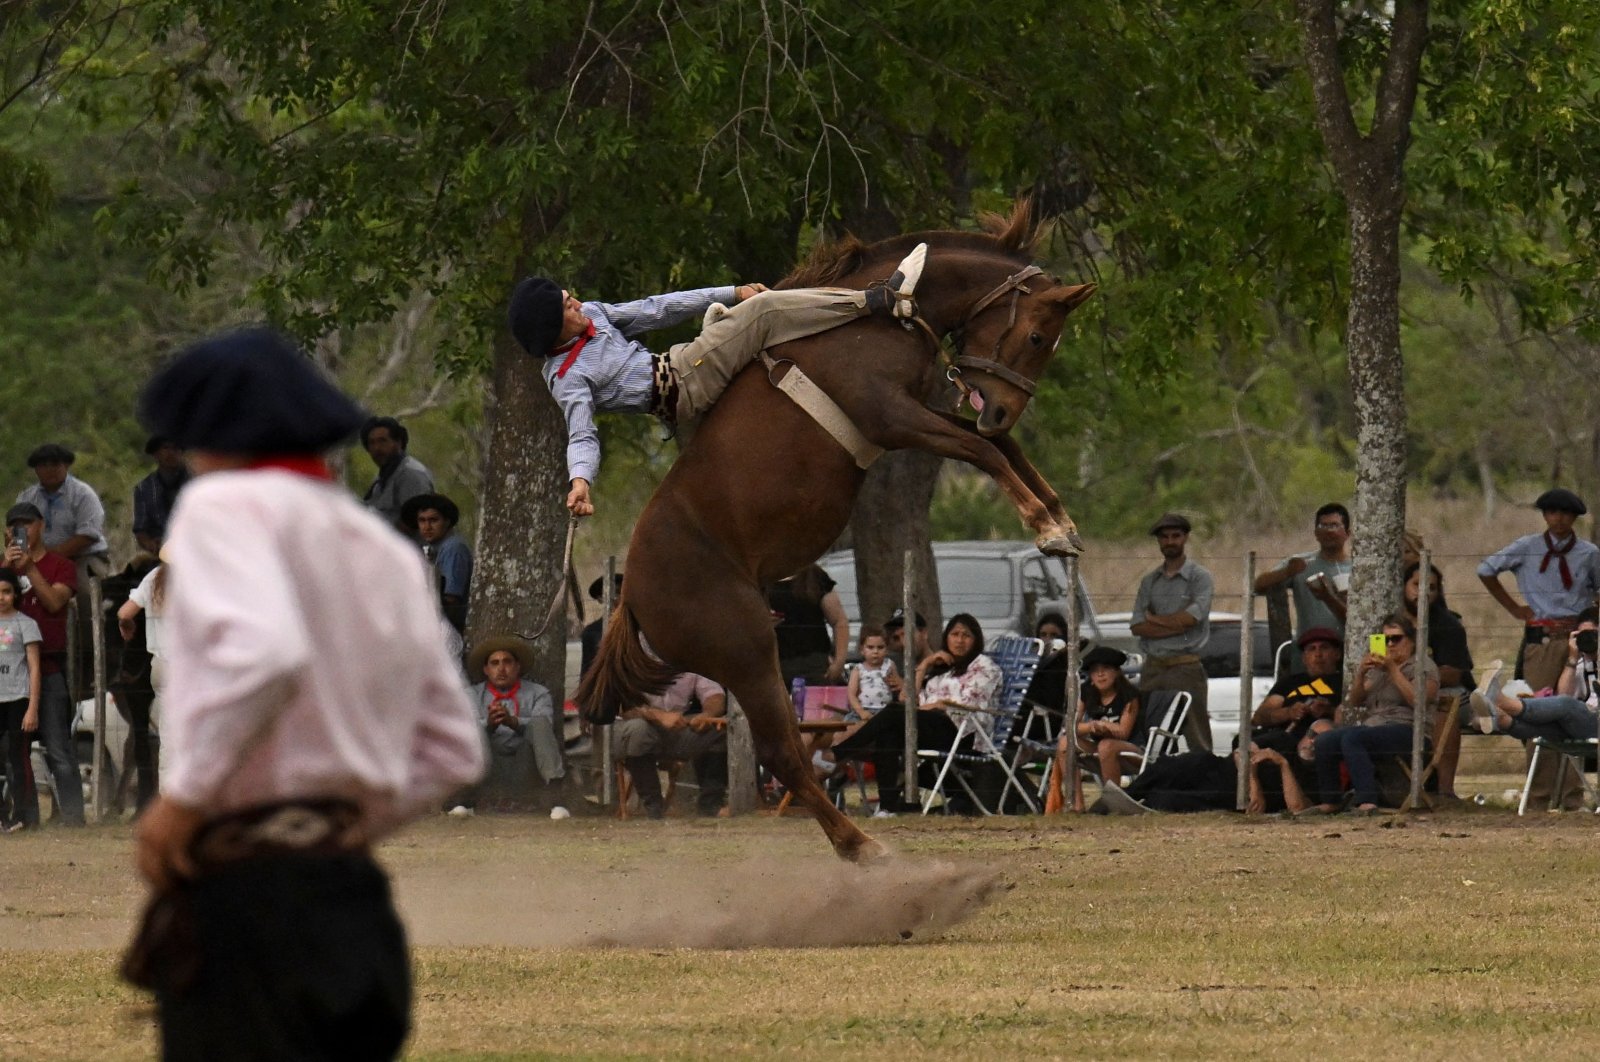 Manusia, mitos, legenda: Pahlawan penunggang kuda Argentina di abad ke-21